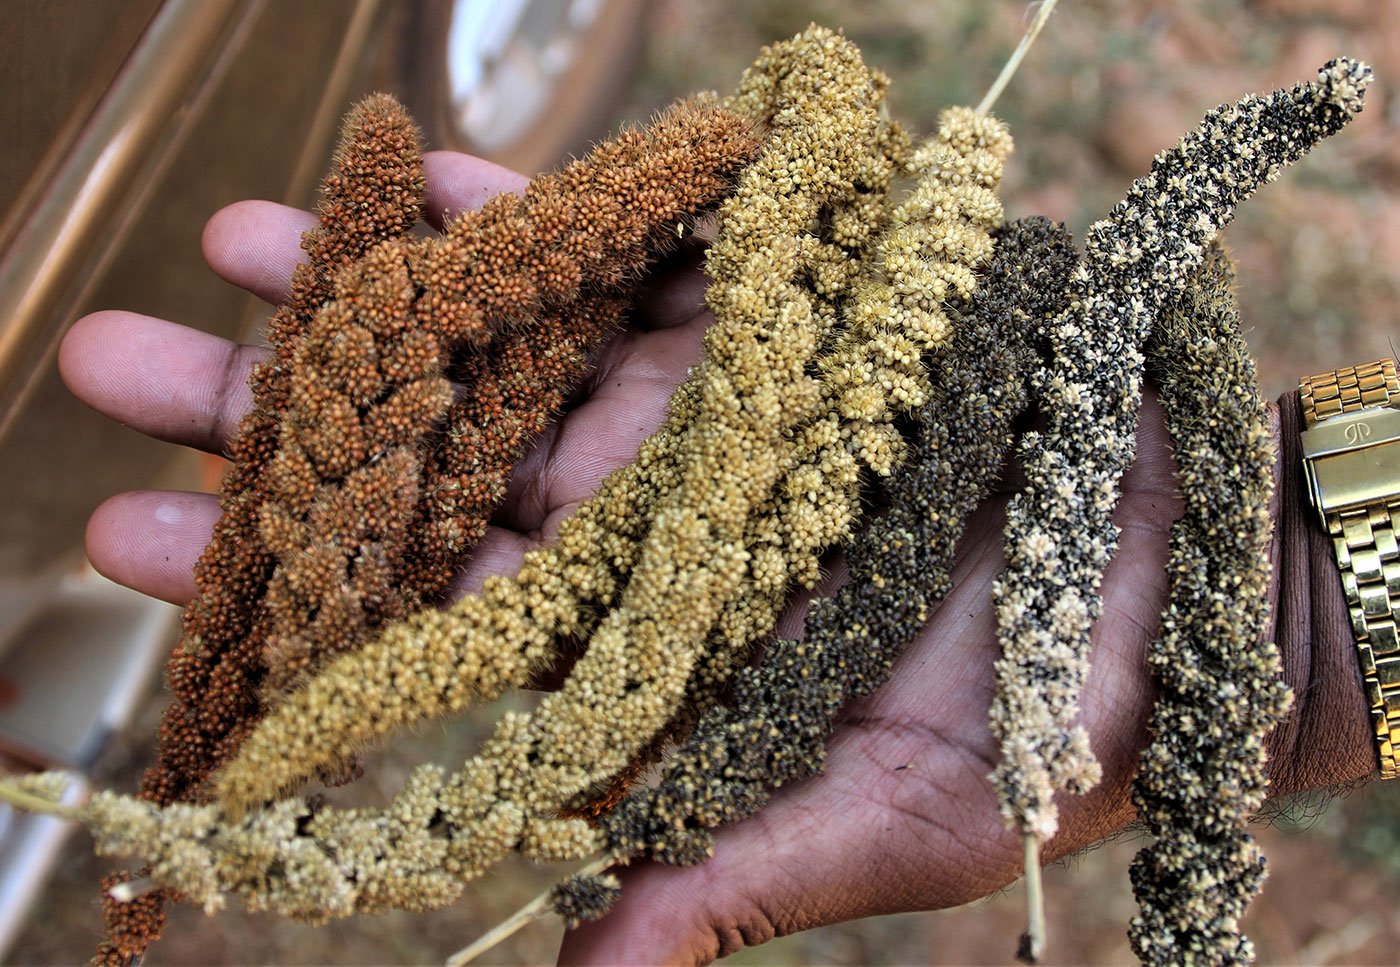 A man holding Foxtail millet (kangu seeds)